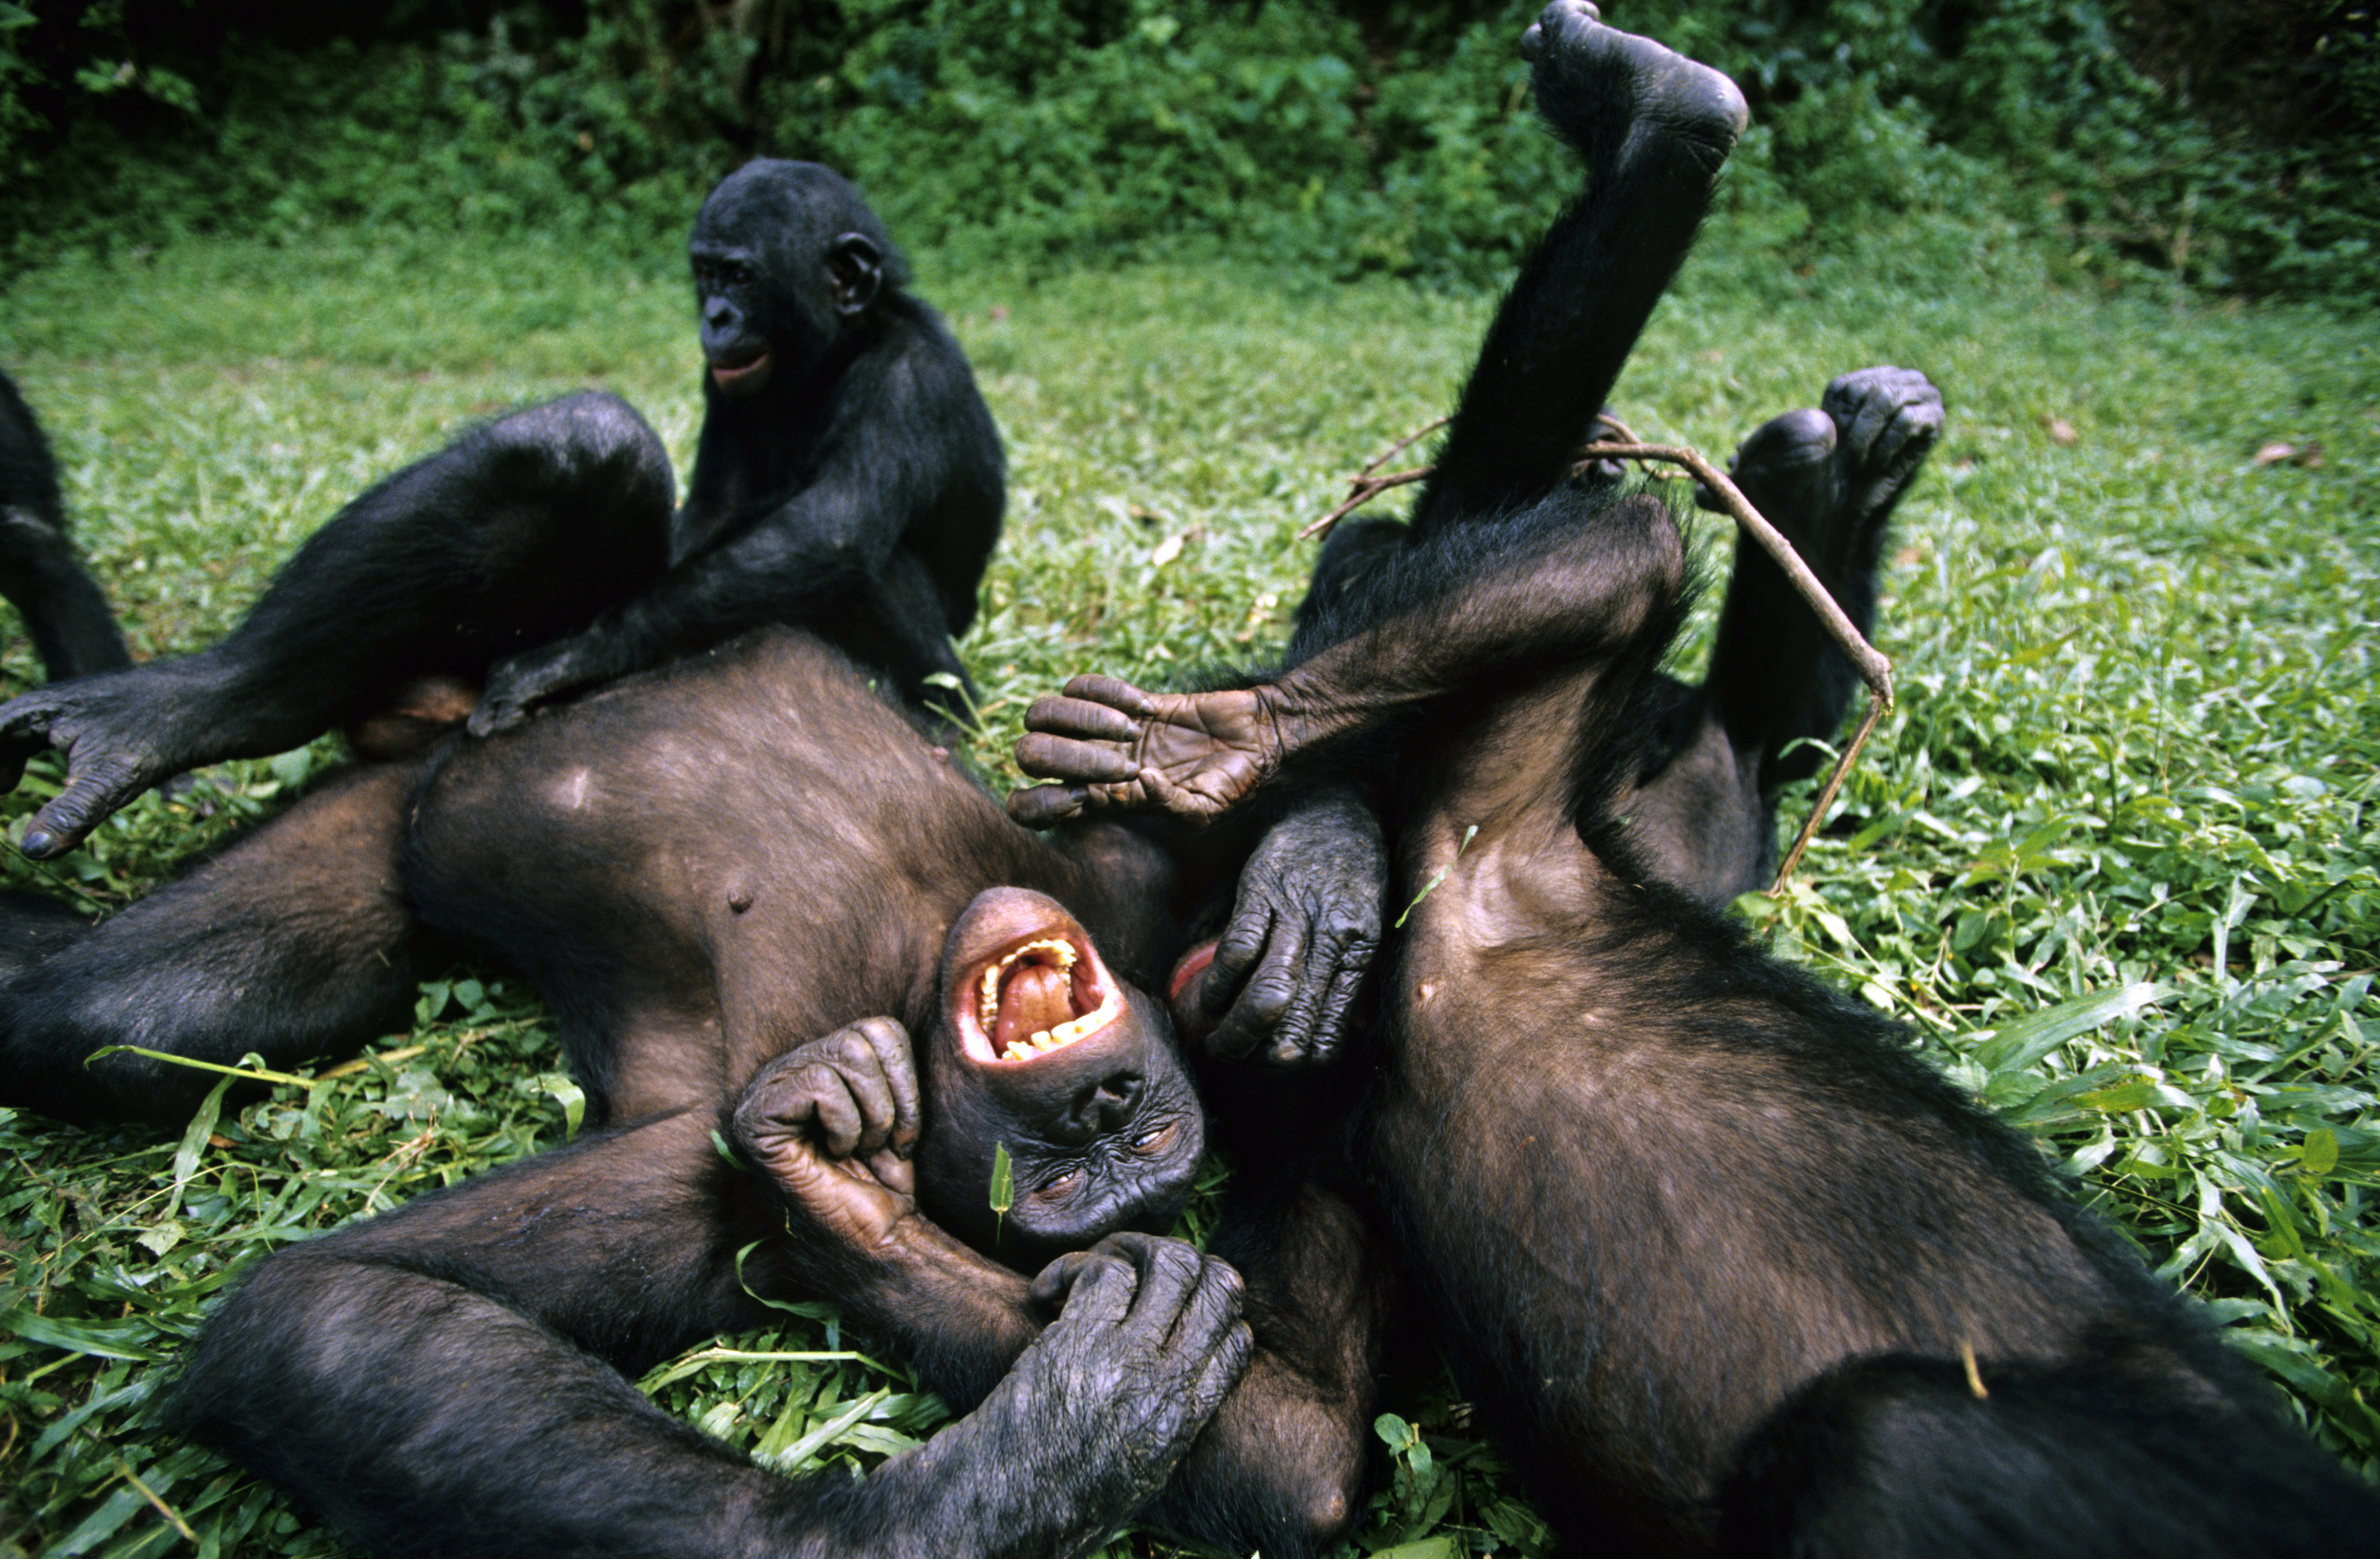 A majmok viccelődése az emberi humor evolúciós előfutára